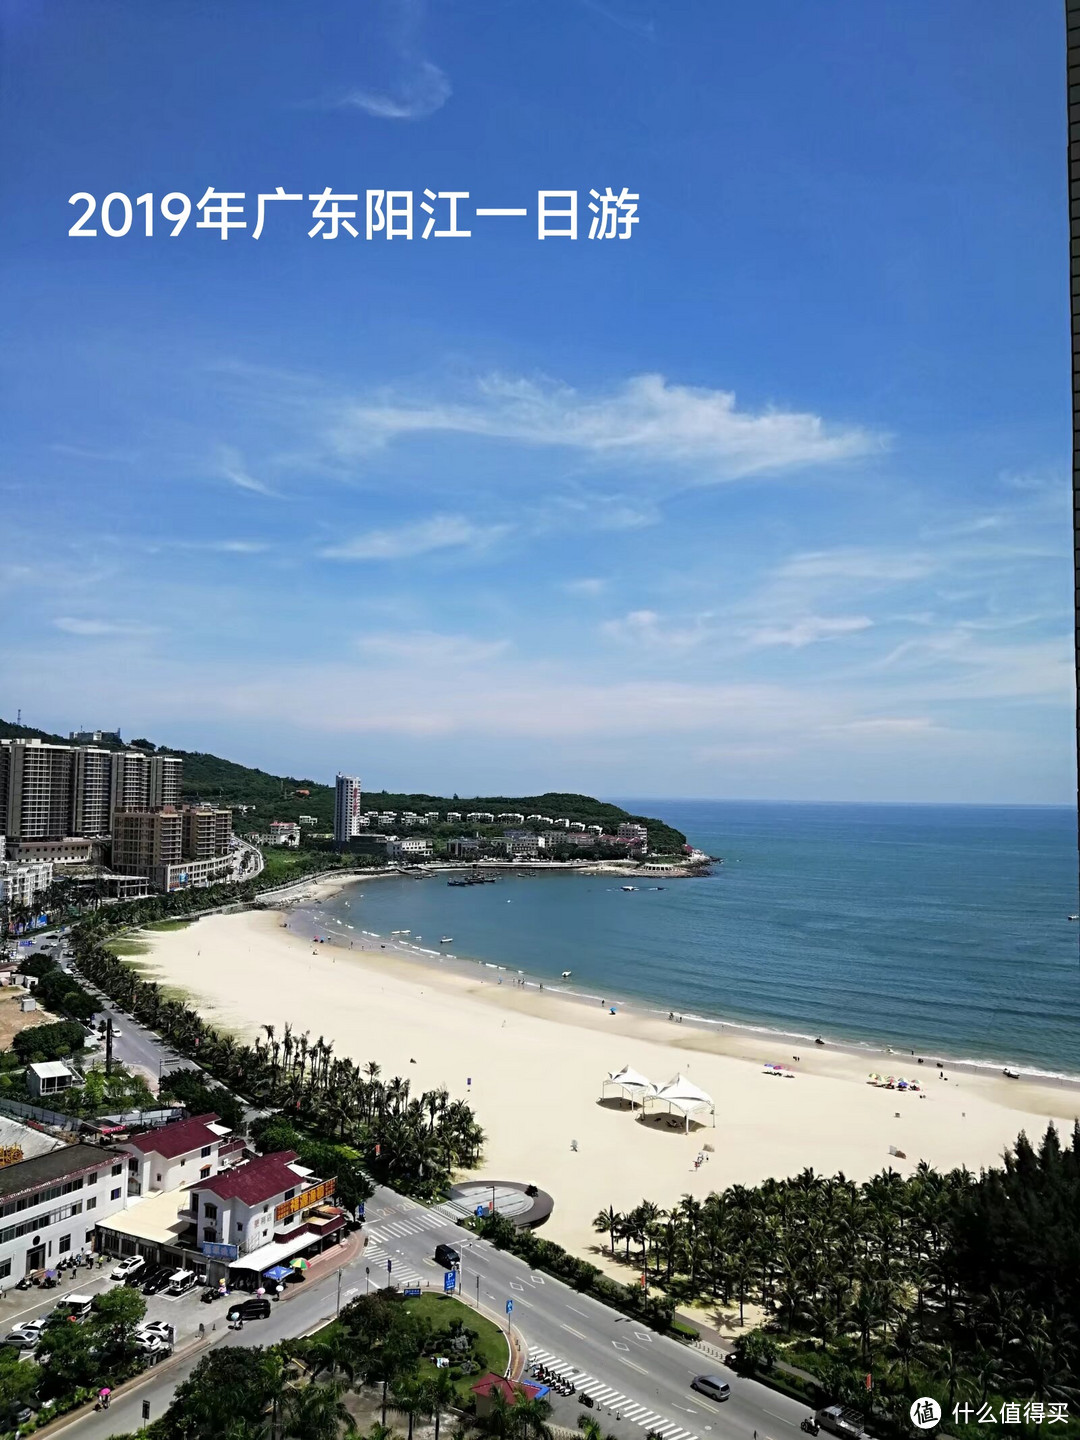 阳江是广东省粤西地区的一个城市，位于珠江口西岸，毗邻湛江、茂名等城市。阳江有着丰富的自然和人文资源，是一个旅游胜地